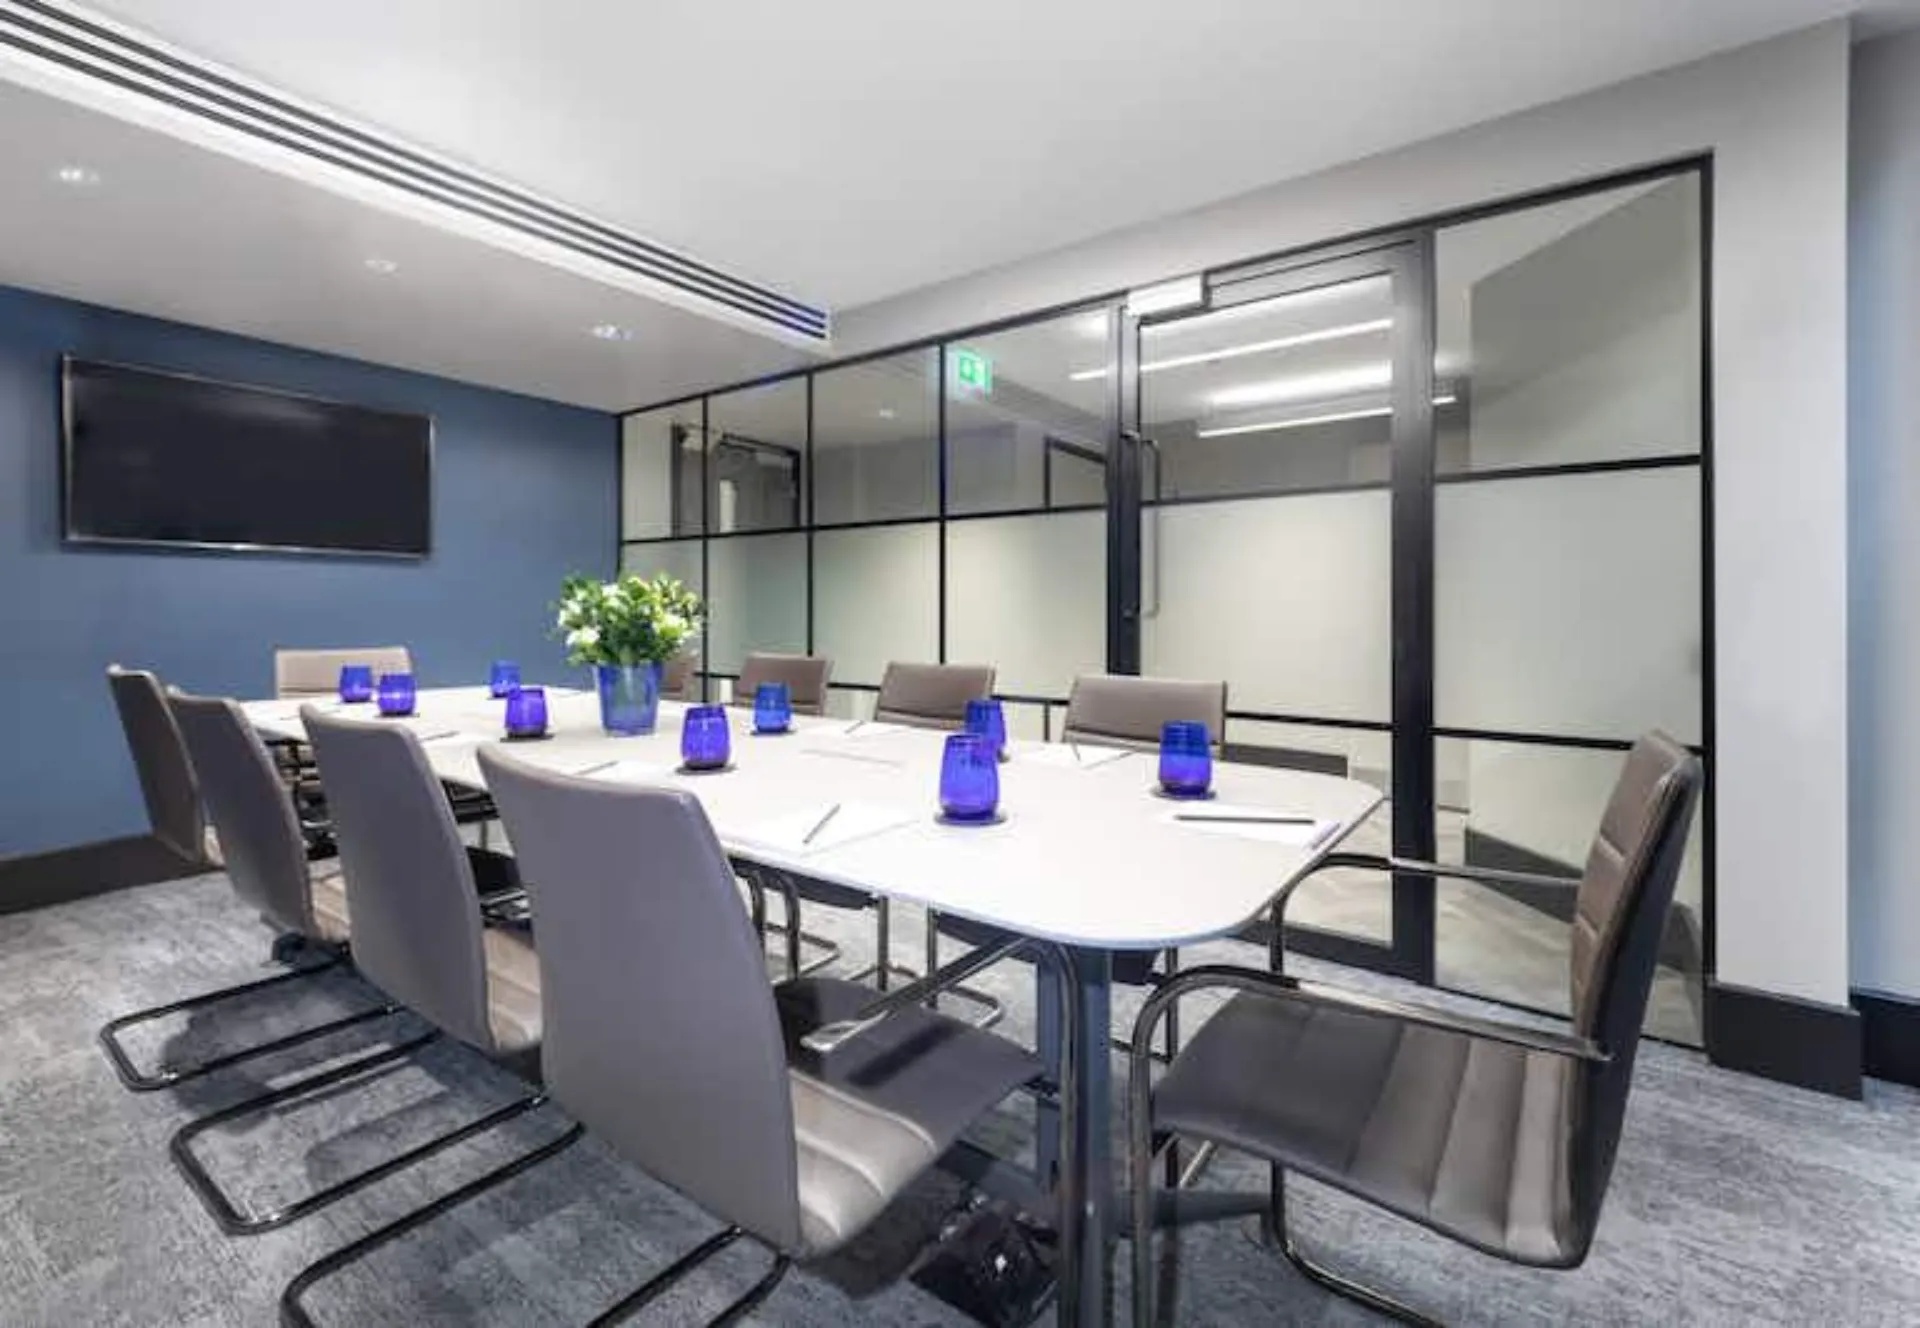 Landmark meeting room venue hire spacious boardroom conference room presentations